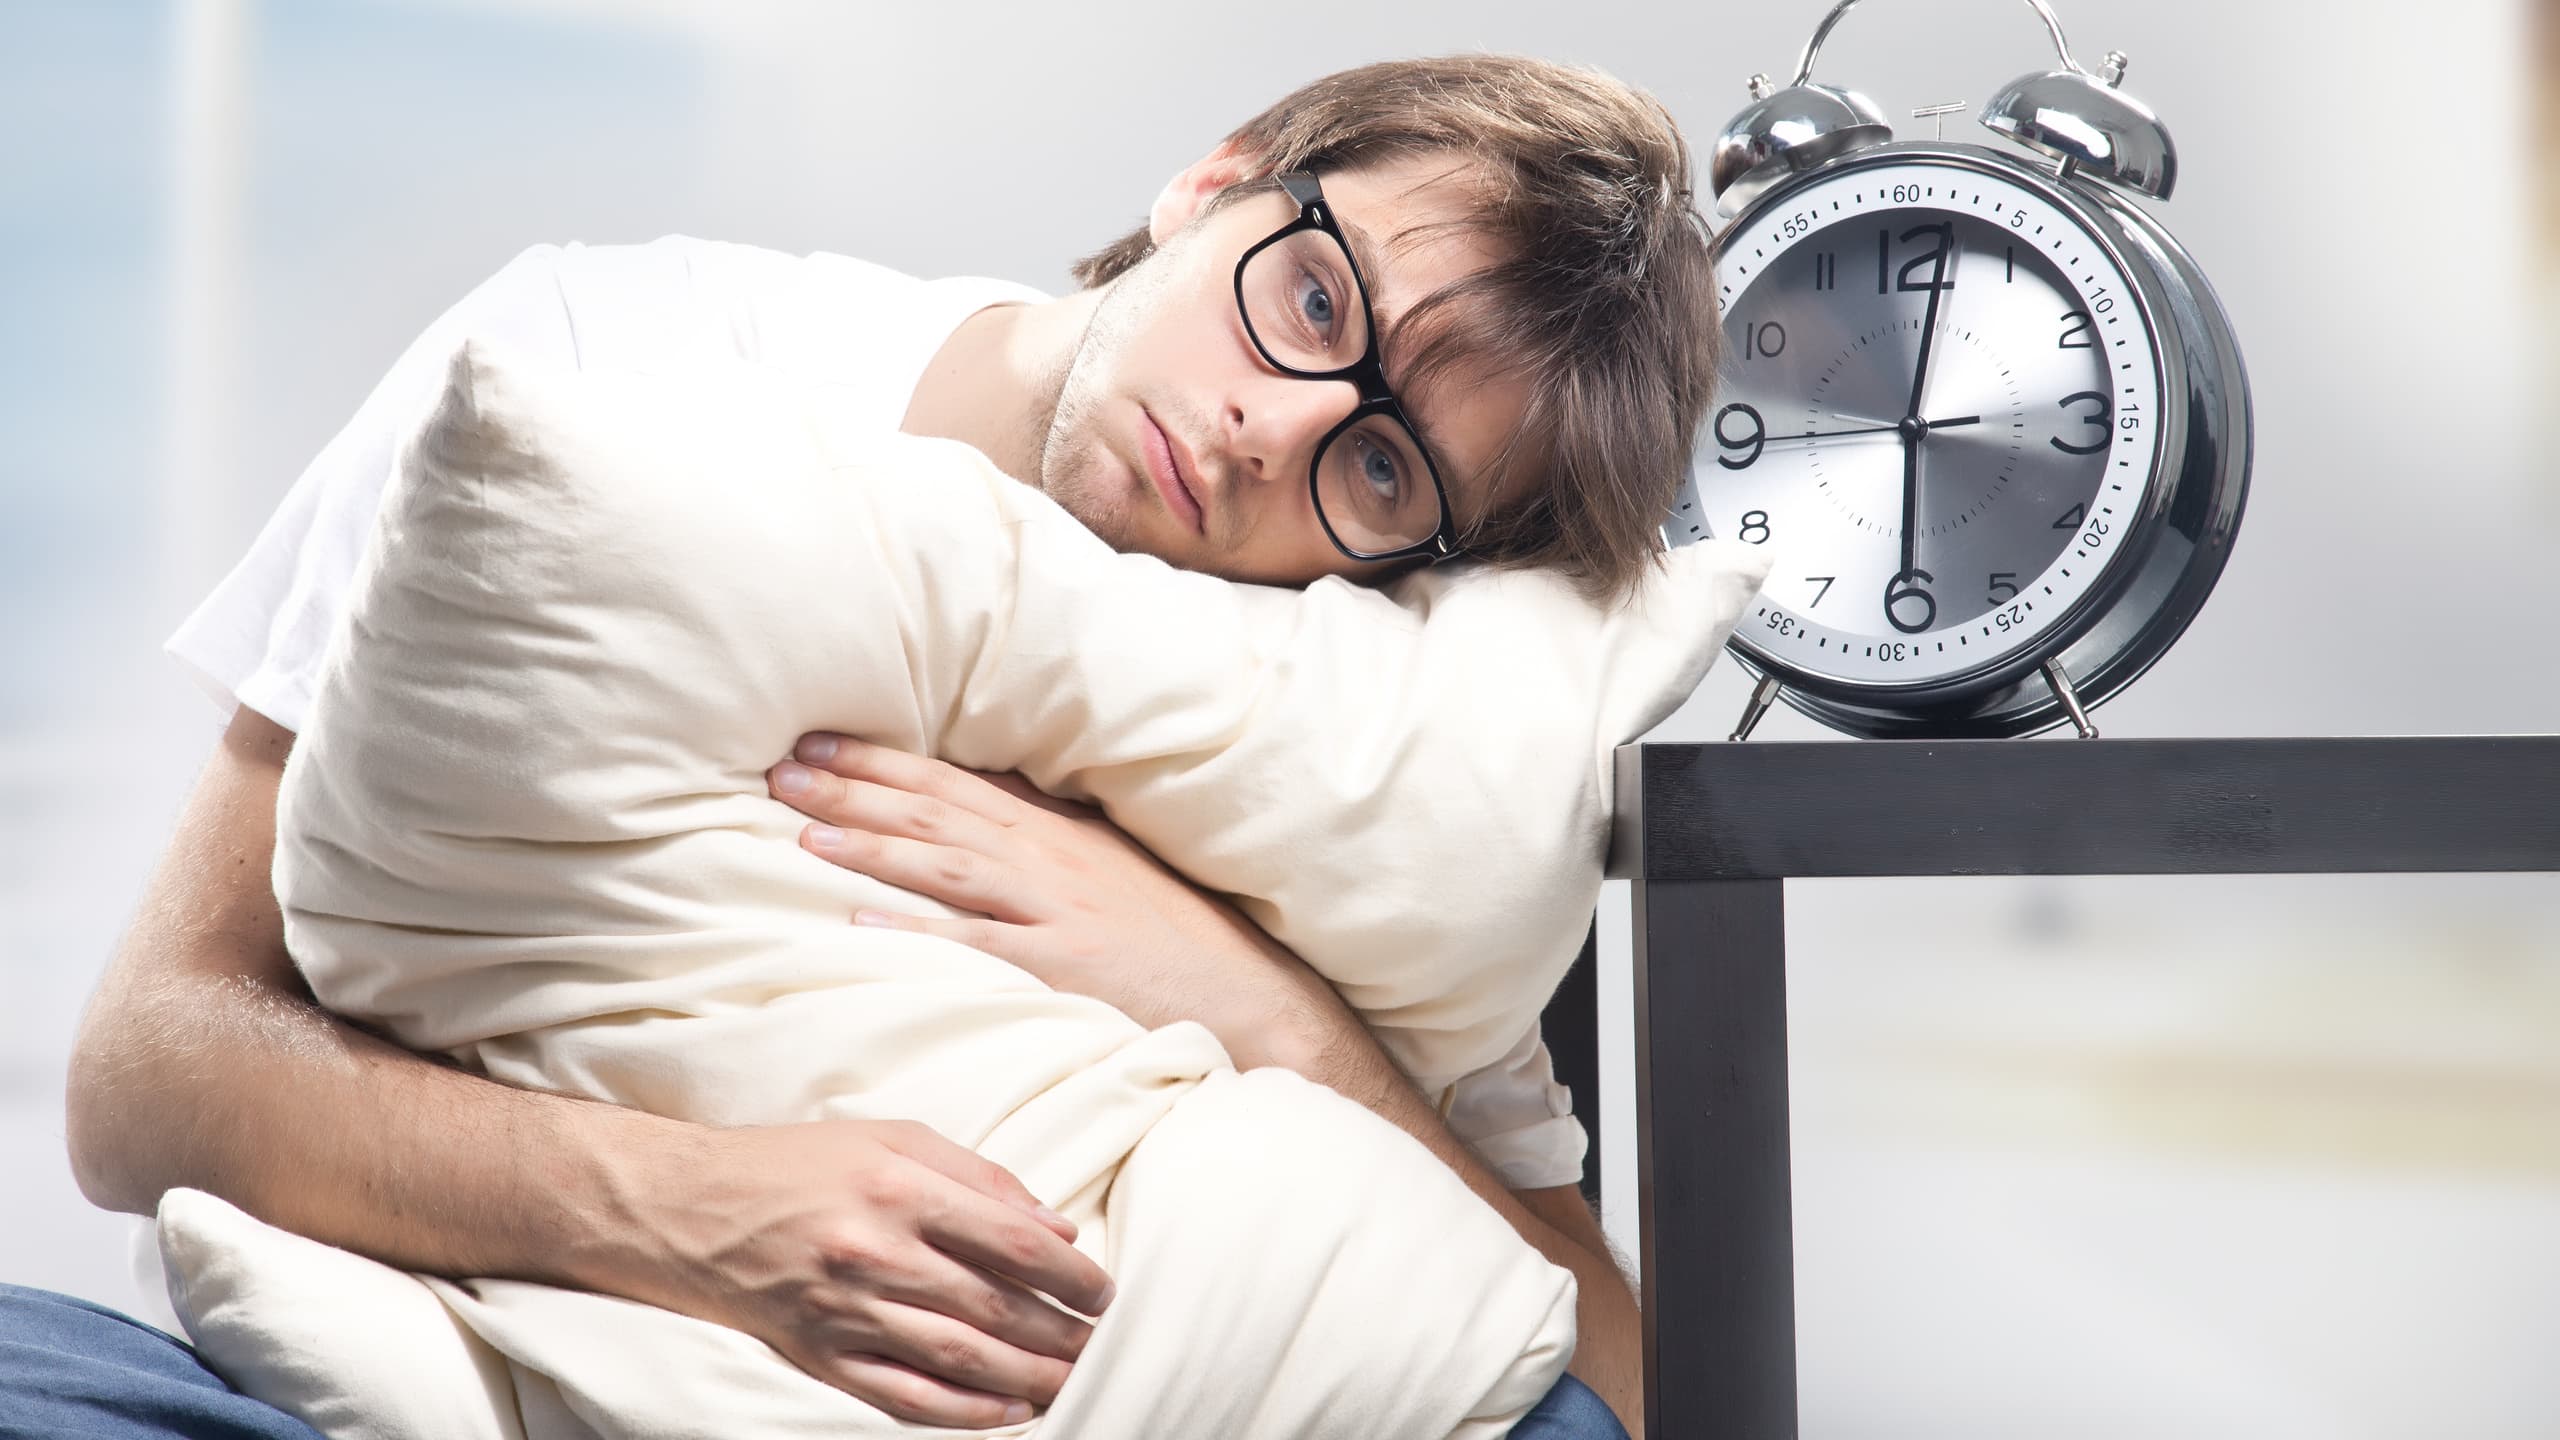 Недосып - последствия, симптомы, что делать. хроническое недосыпание - симптомы и лечение